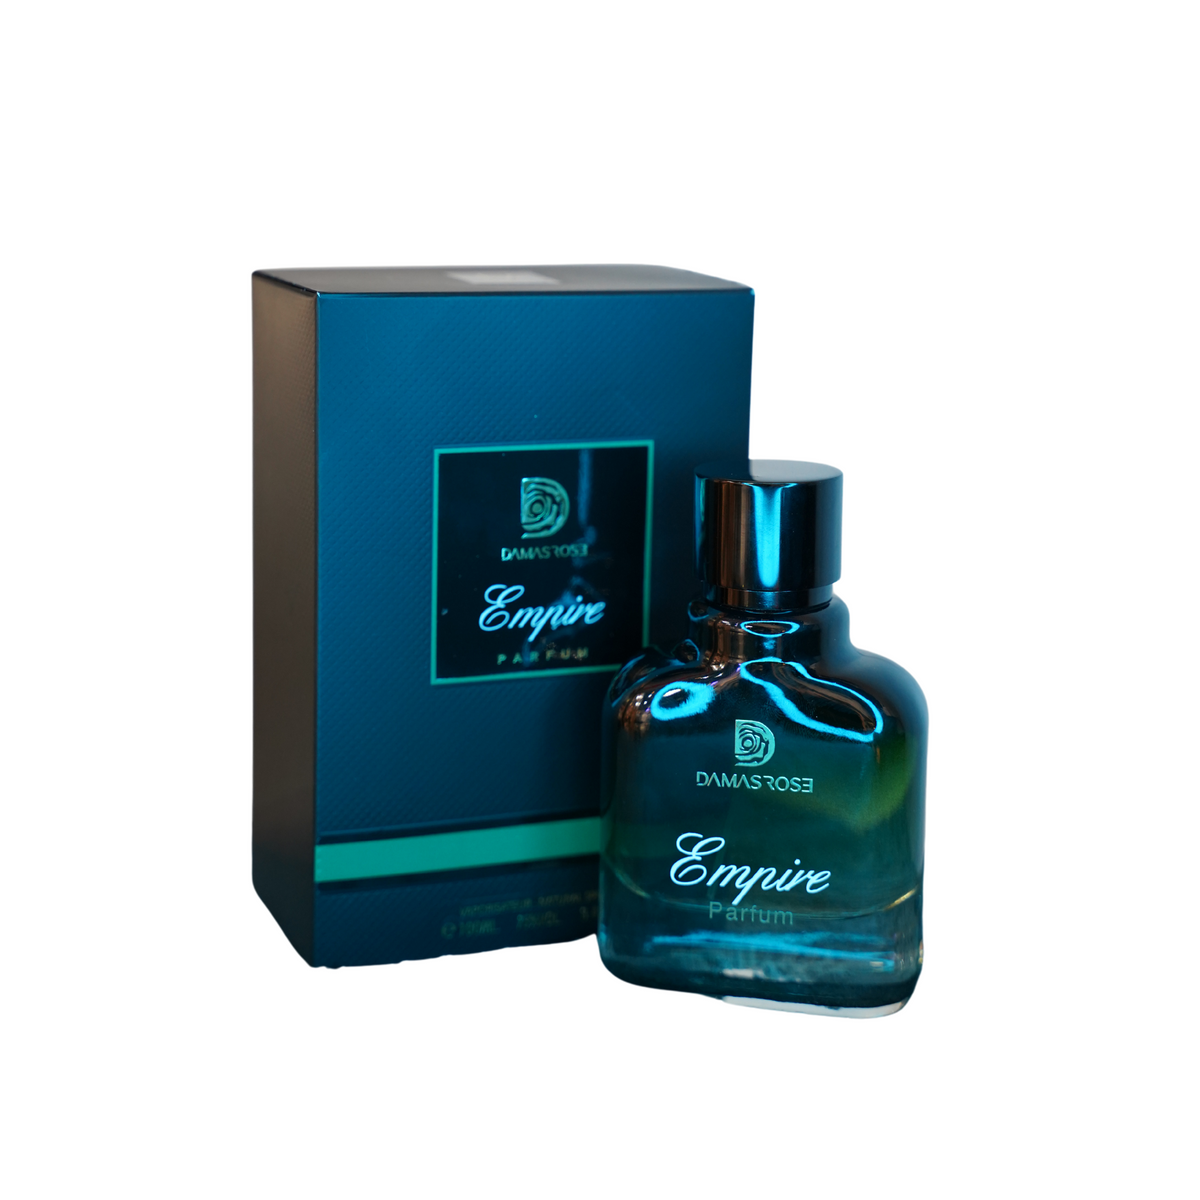 Empire Unisex Eau De Perfume by Damas Rose - 100ml